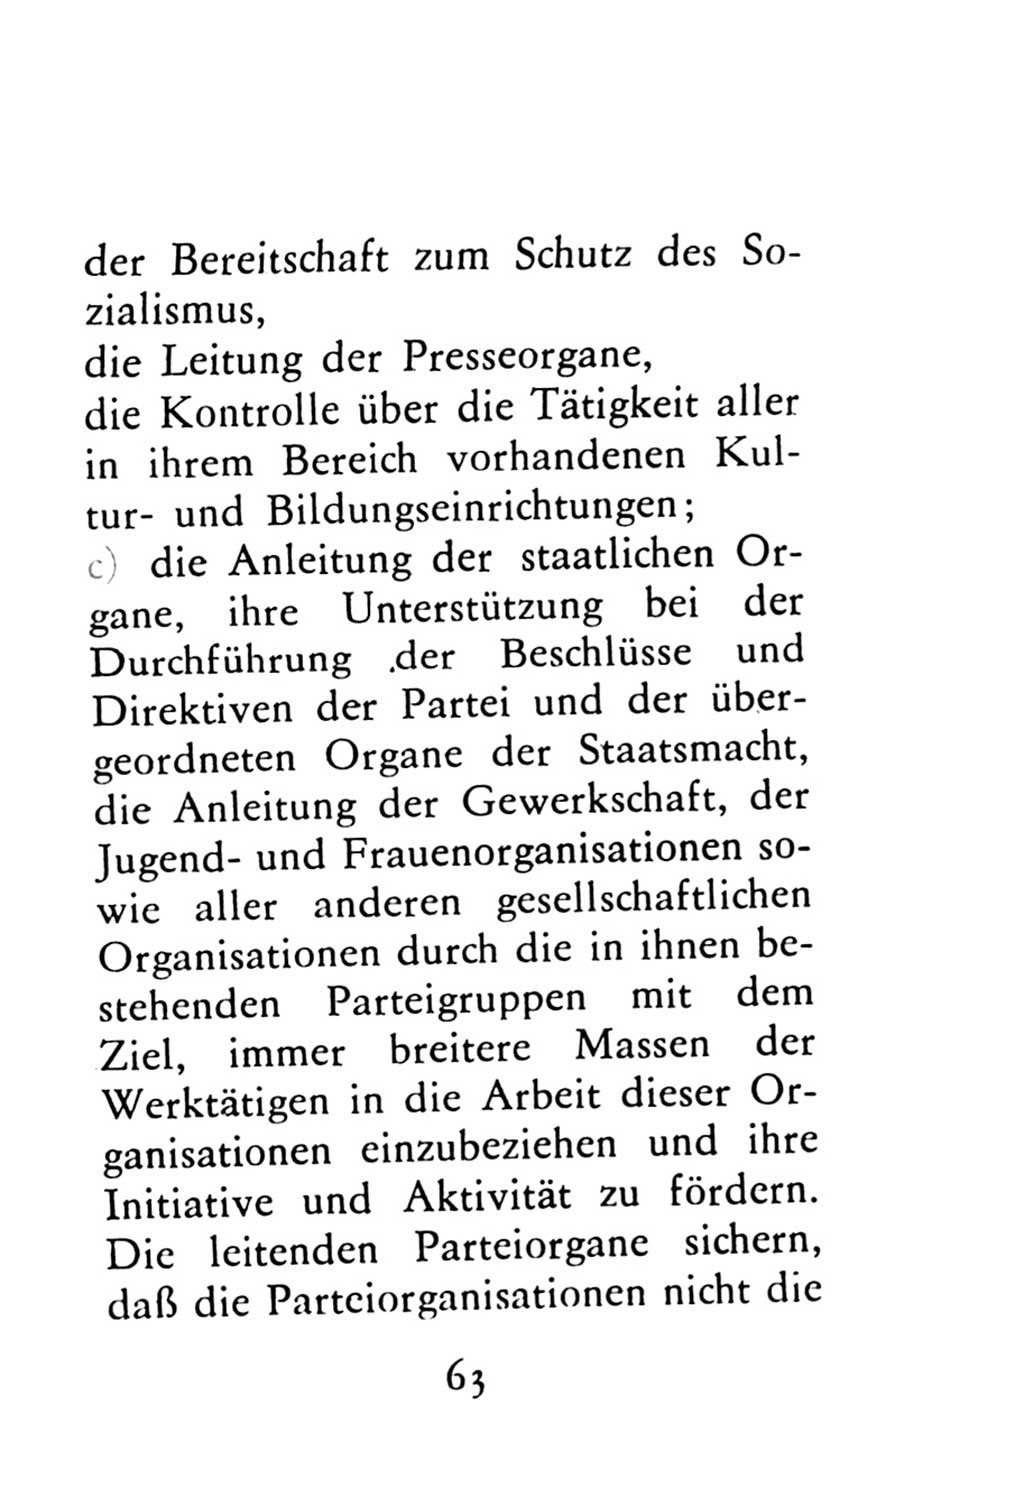 Statut der Sozialistischen Einheitspartei Deutschlands (SED) 1976, Seite 63 (St. SED DDR 1976, S. 63)